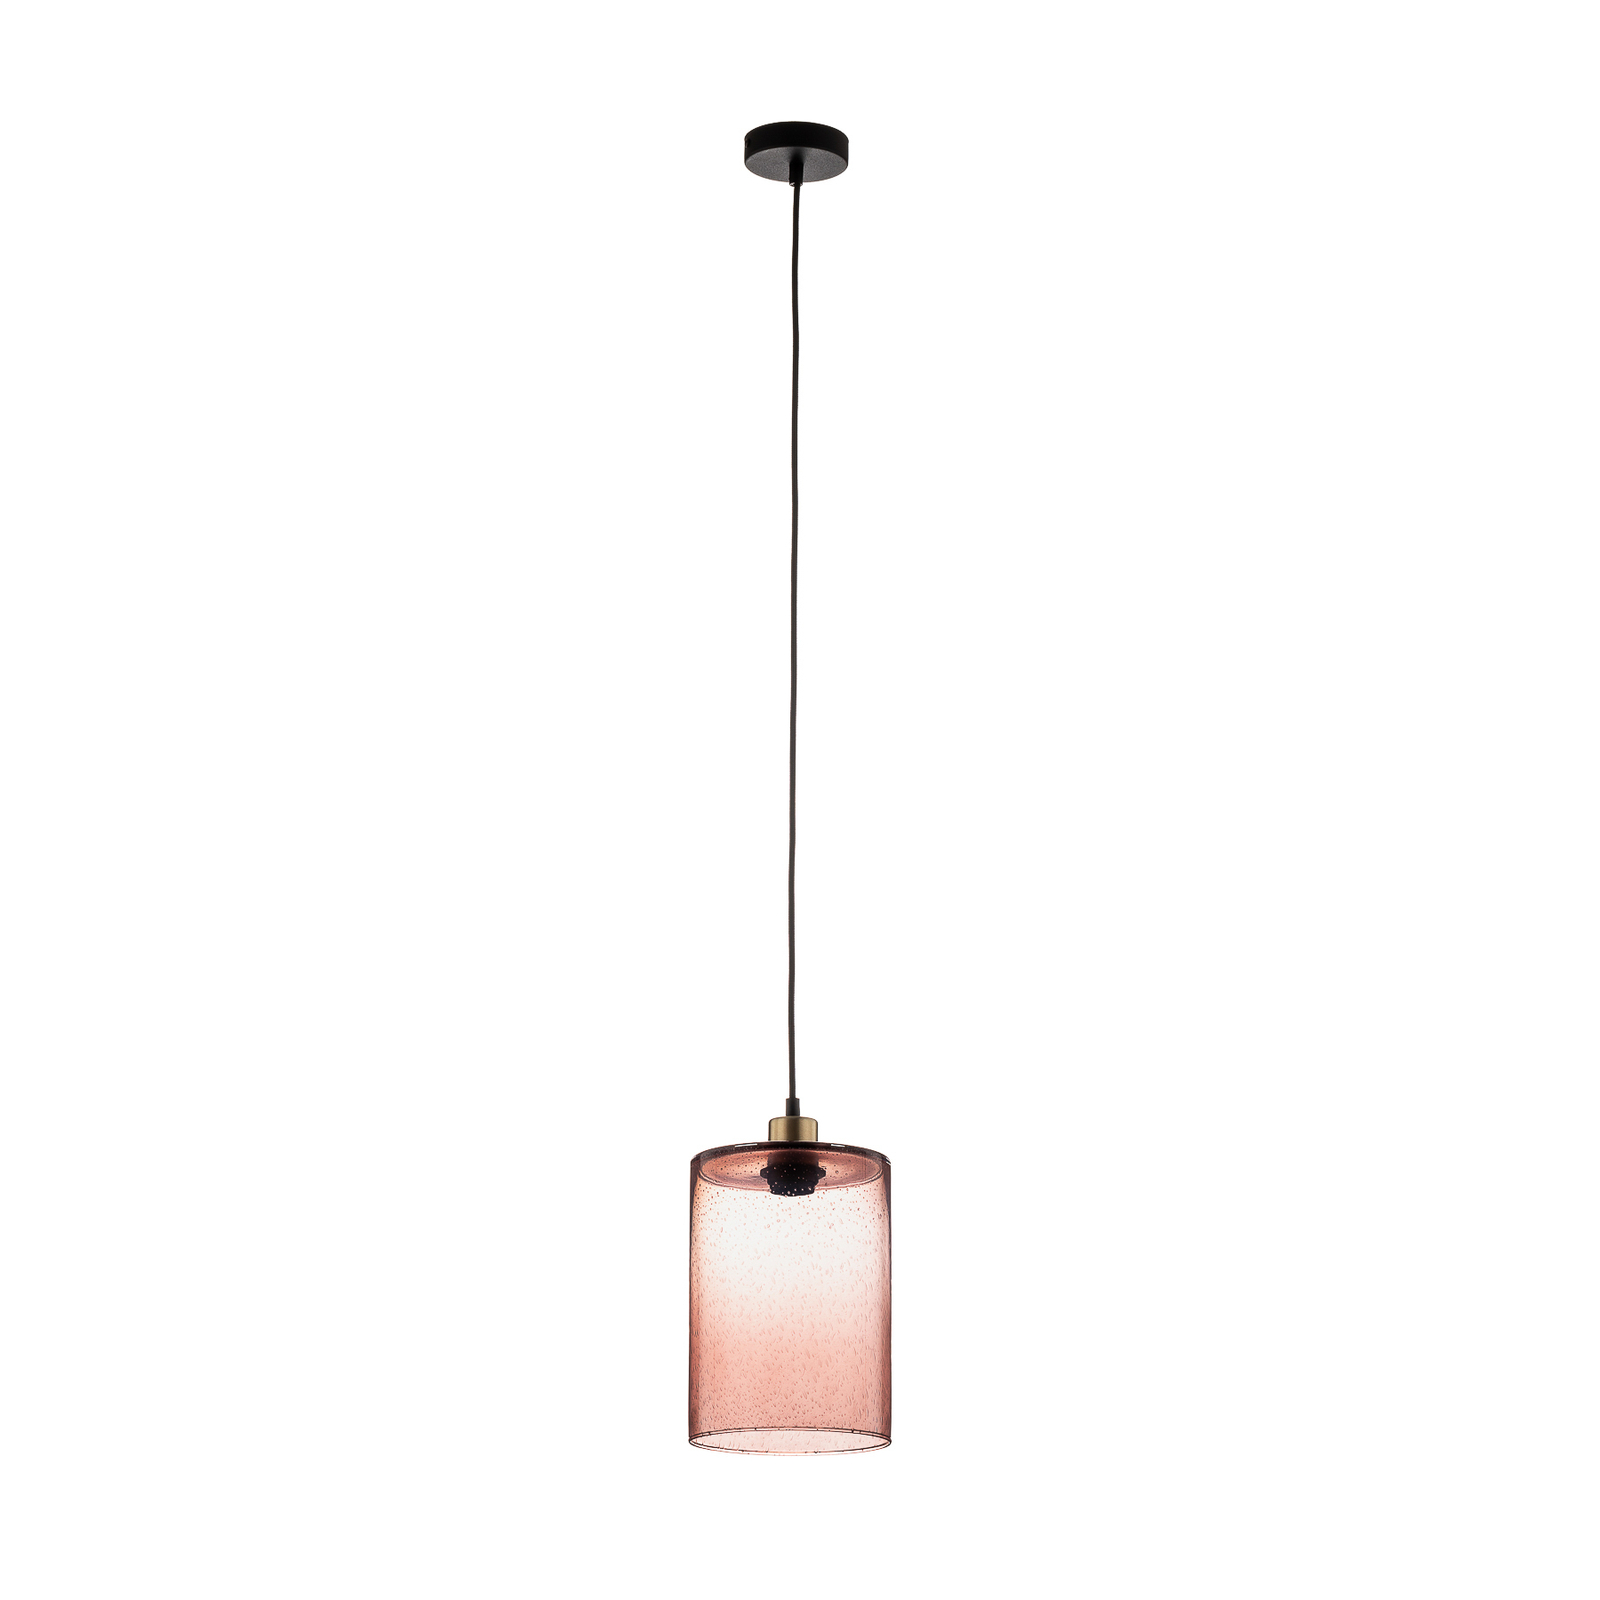 Soda hanging light cylinder rosé glass Ø 18cm